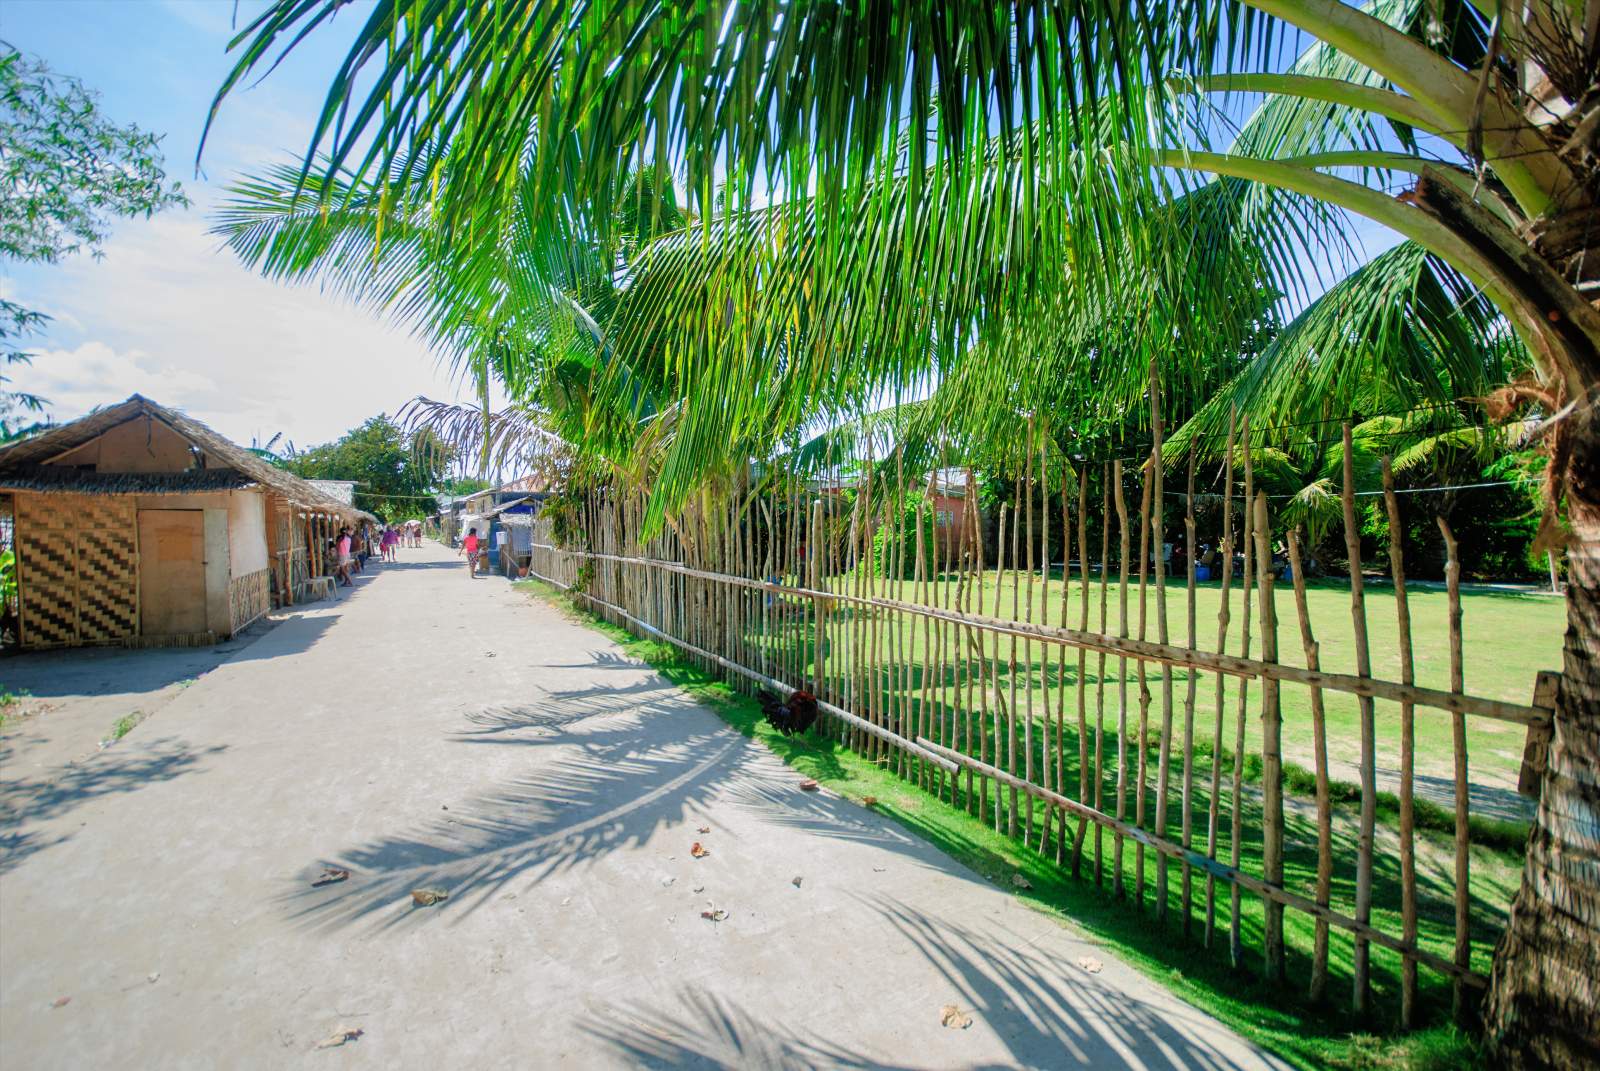 Cagbalete Island Walking through Barangay Cagbalete Uno (Centro)